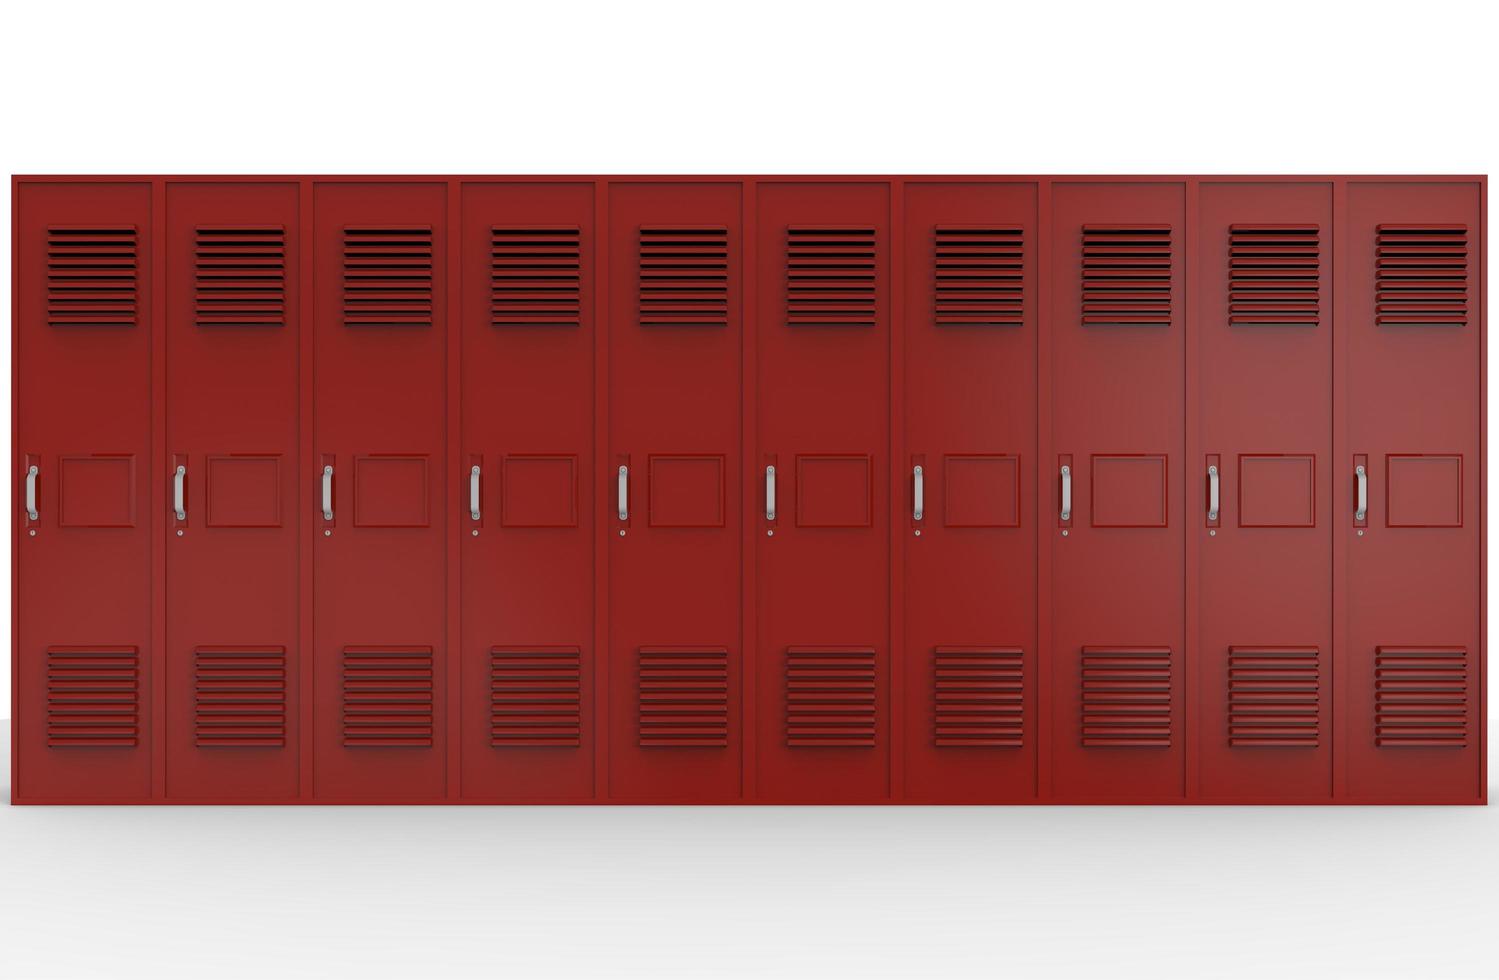 kluisjes rode basisschool op een rij afbeelding 3d illustratie foto